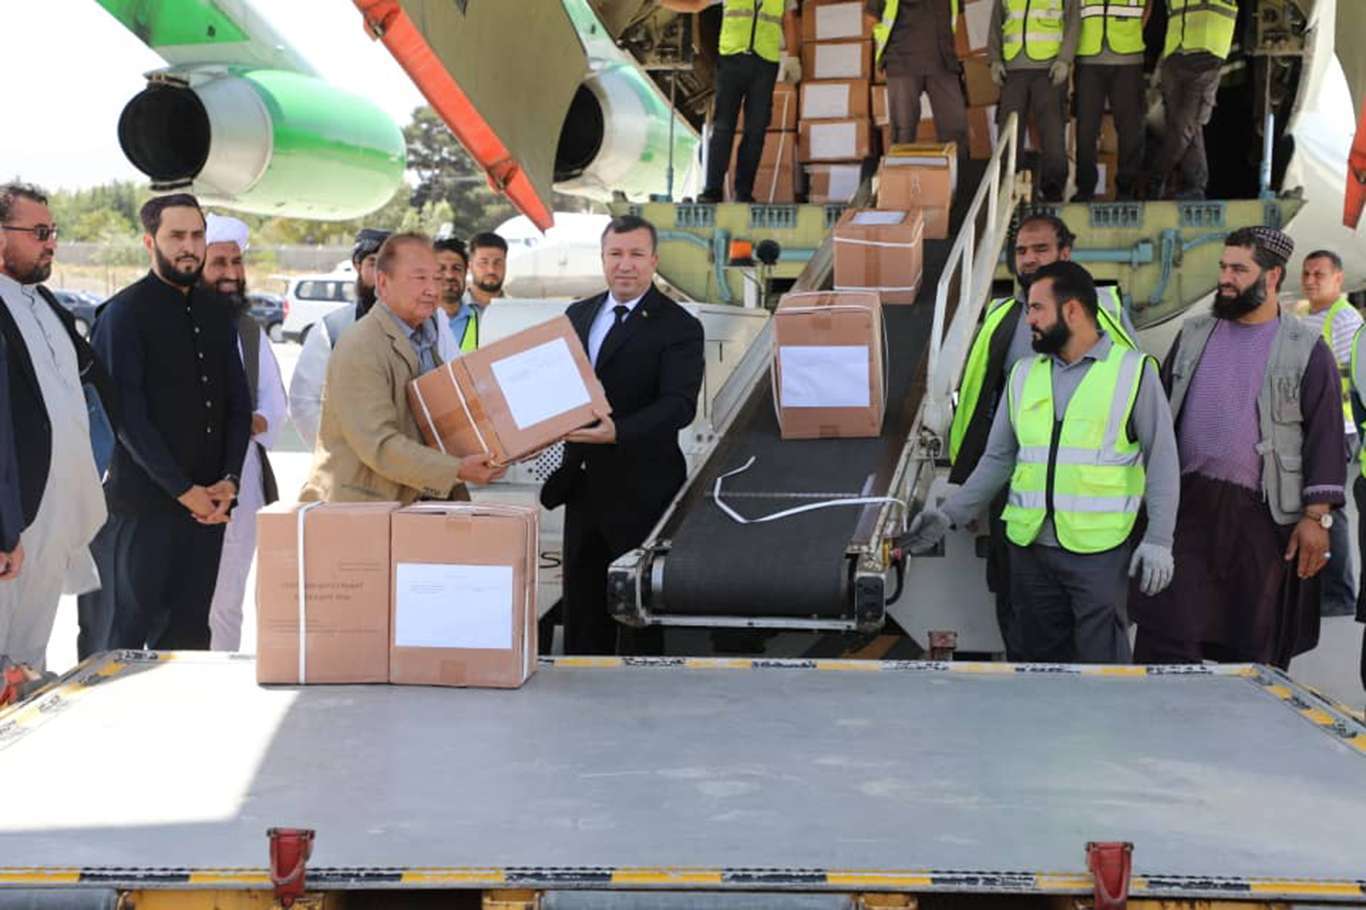   20  طناً من المساعدات الإنسانية من تركمانستان إلى أفغانستان